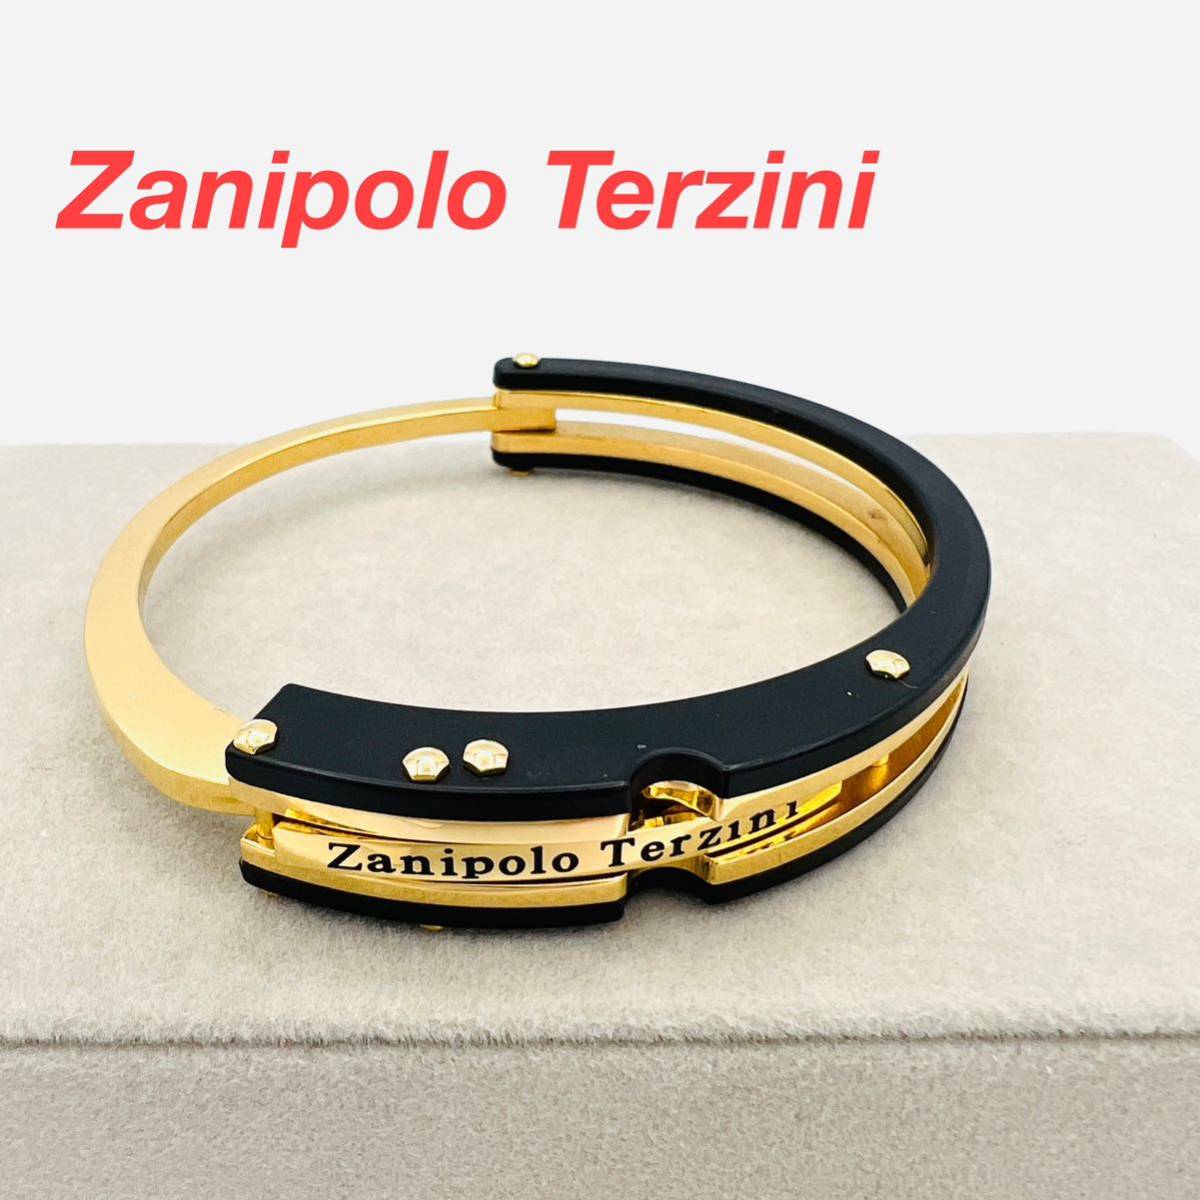 Zanipolo Terzini ザニポロタルツィーニ バングル ゴールド×ブラックカラー 手錠モチーフ